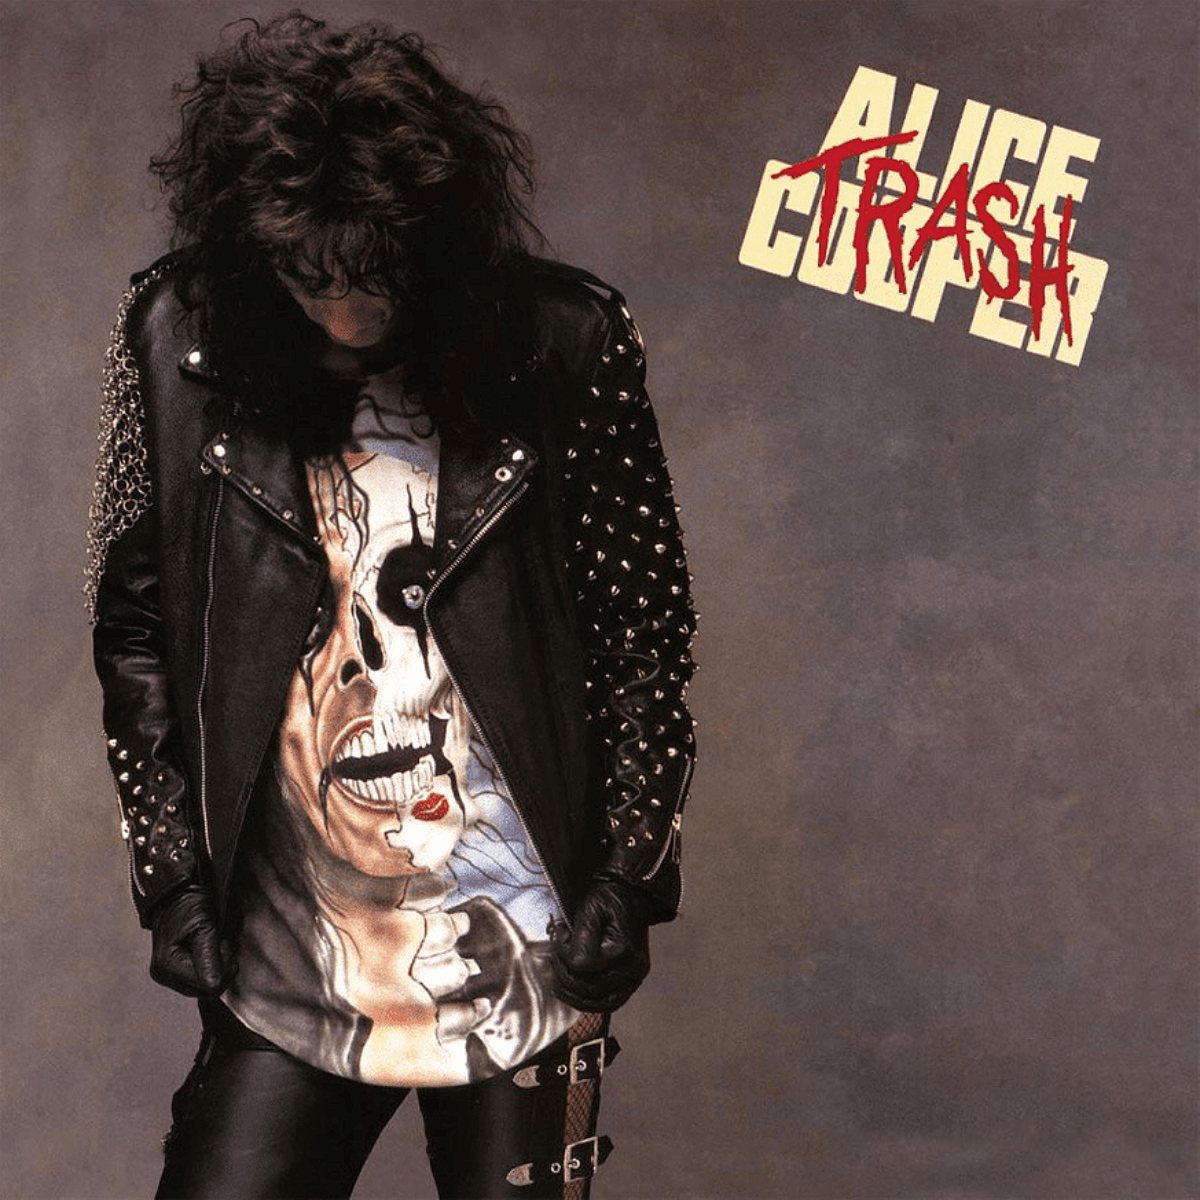 Alice Cooper's "Trash" album cover